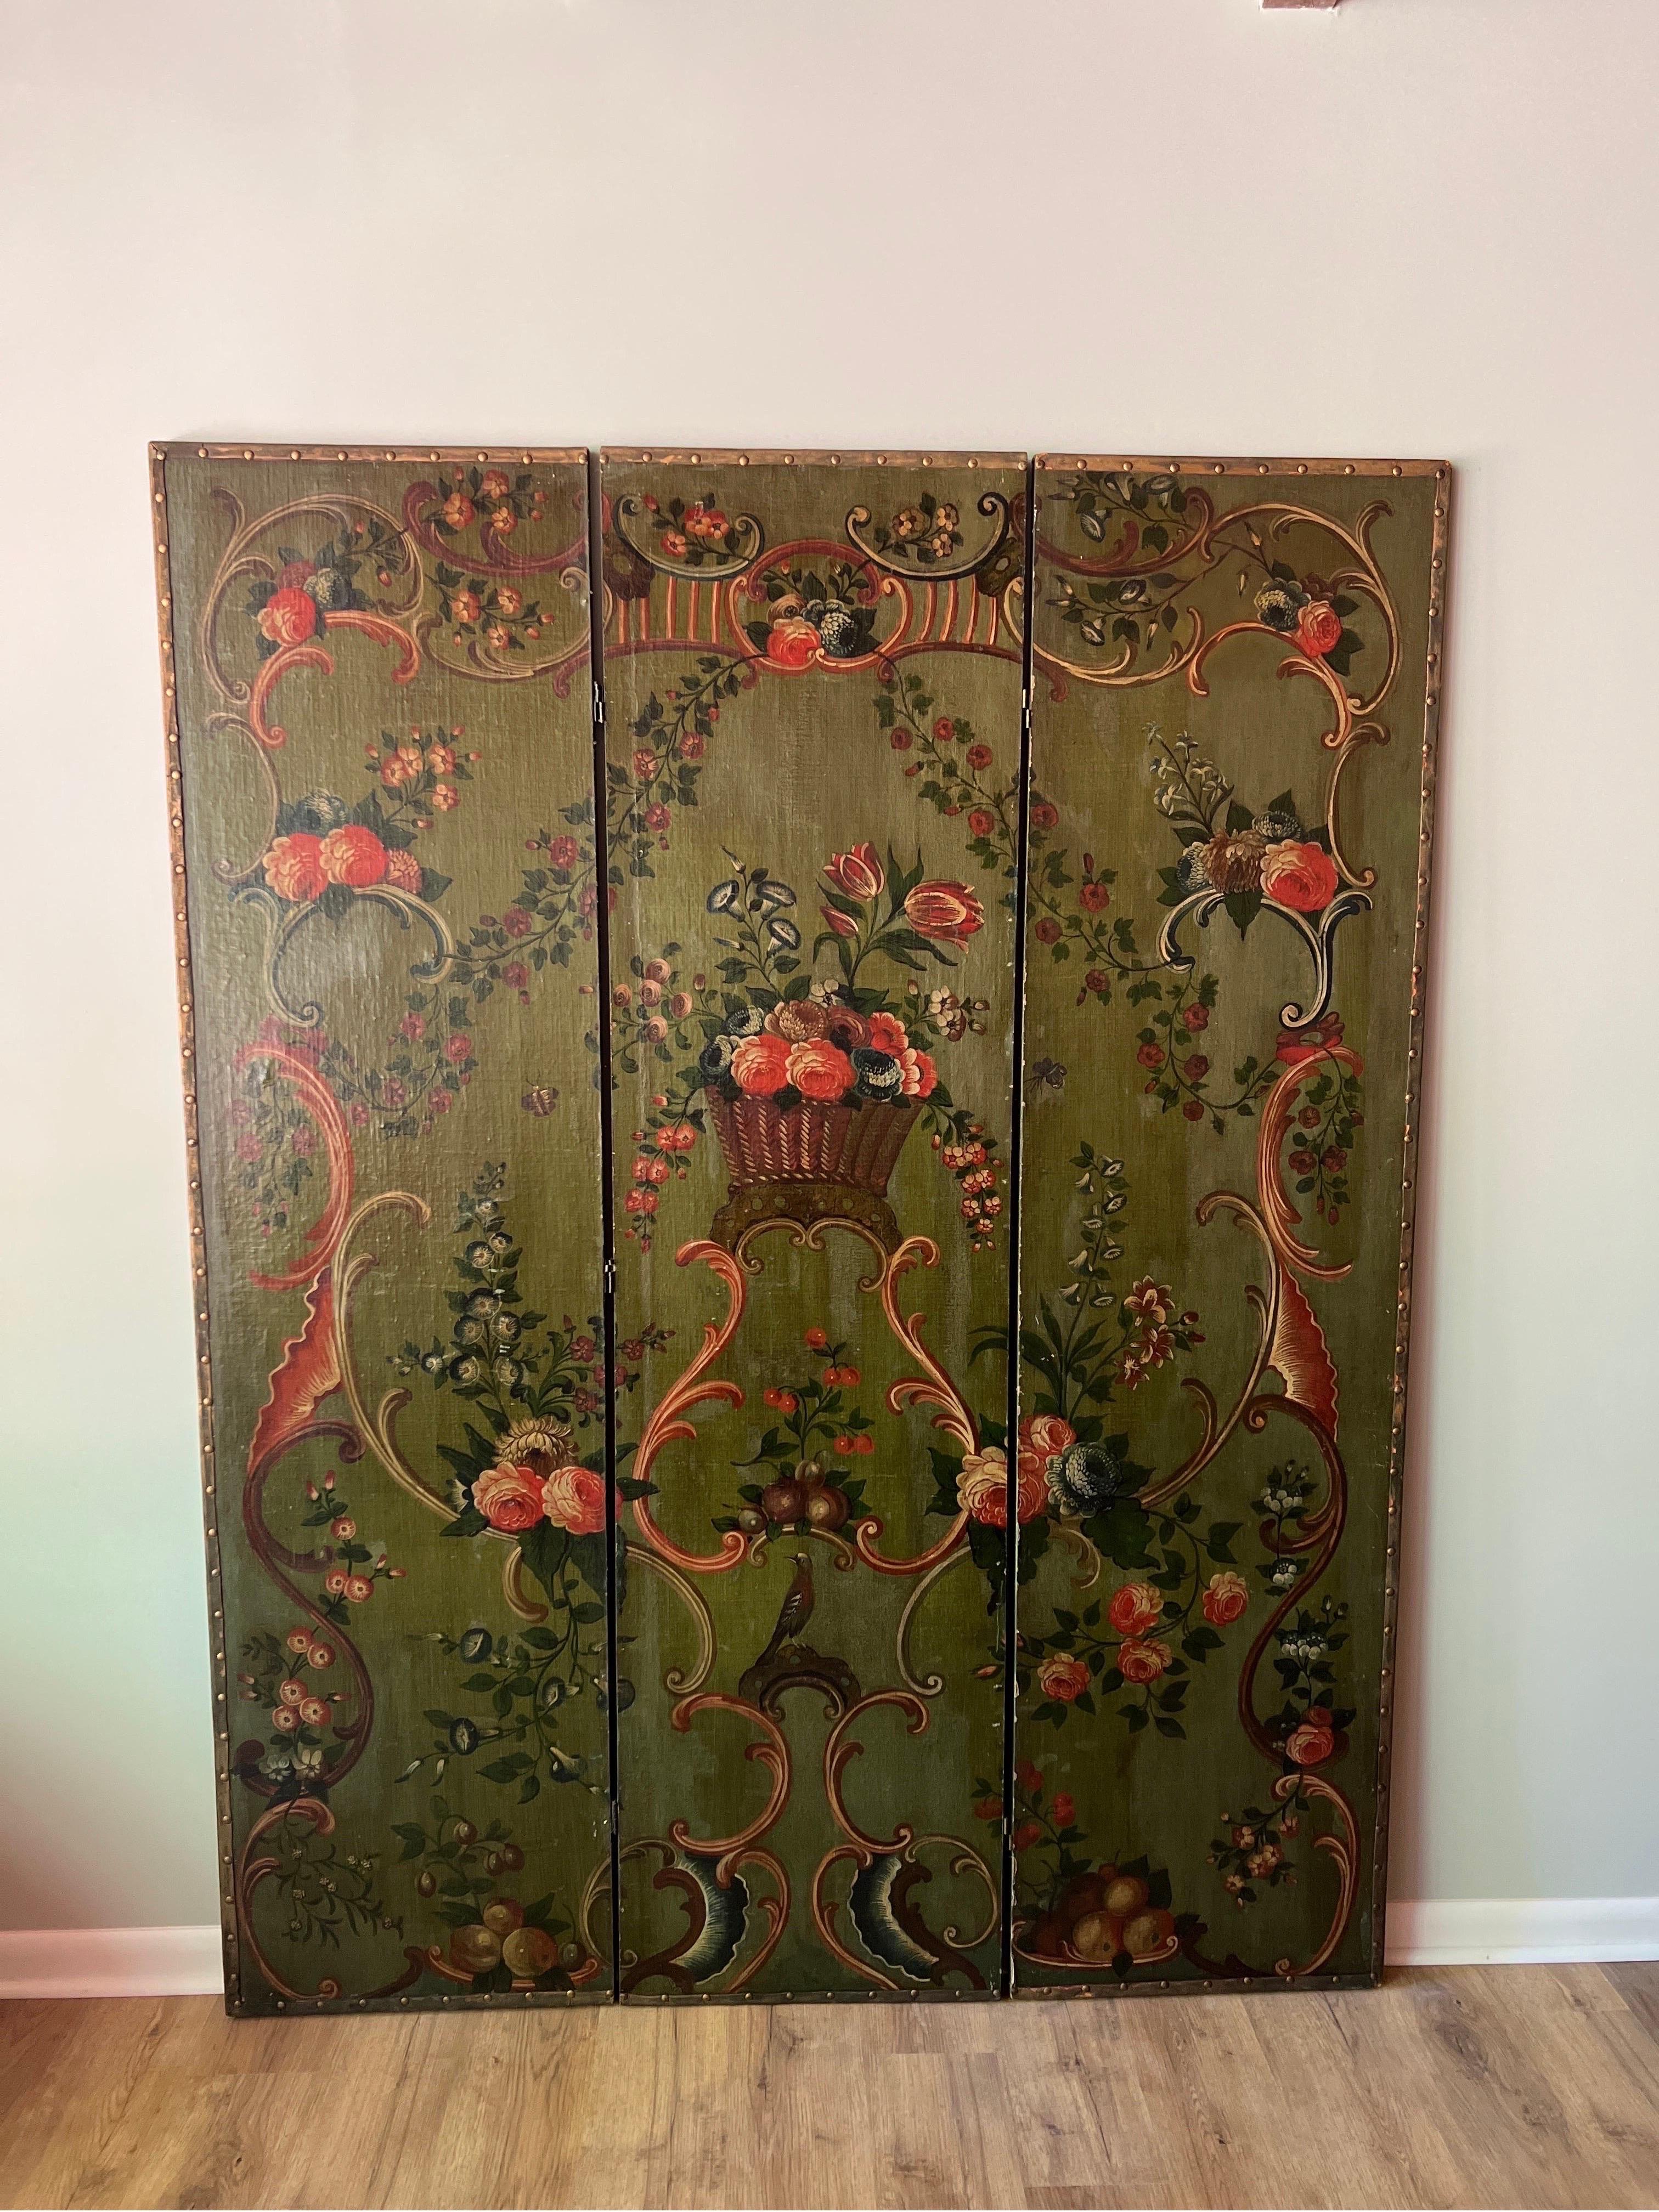 Antike 19. Jahrhundert Italienisch Floral Painted 3 Panel Folding Boden Leinwand / Raumteiler.
Die Leinwand wurde von einem italienischen Schulmaler fachmännisch bemalt. Dekoriert mit Blumen und Blättern, einem Rokoko-Einfluss mit Rollwerk an den